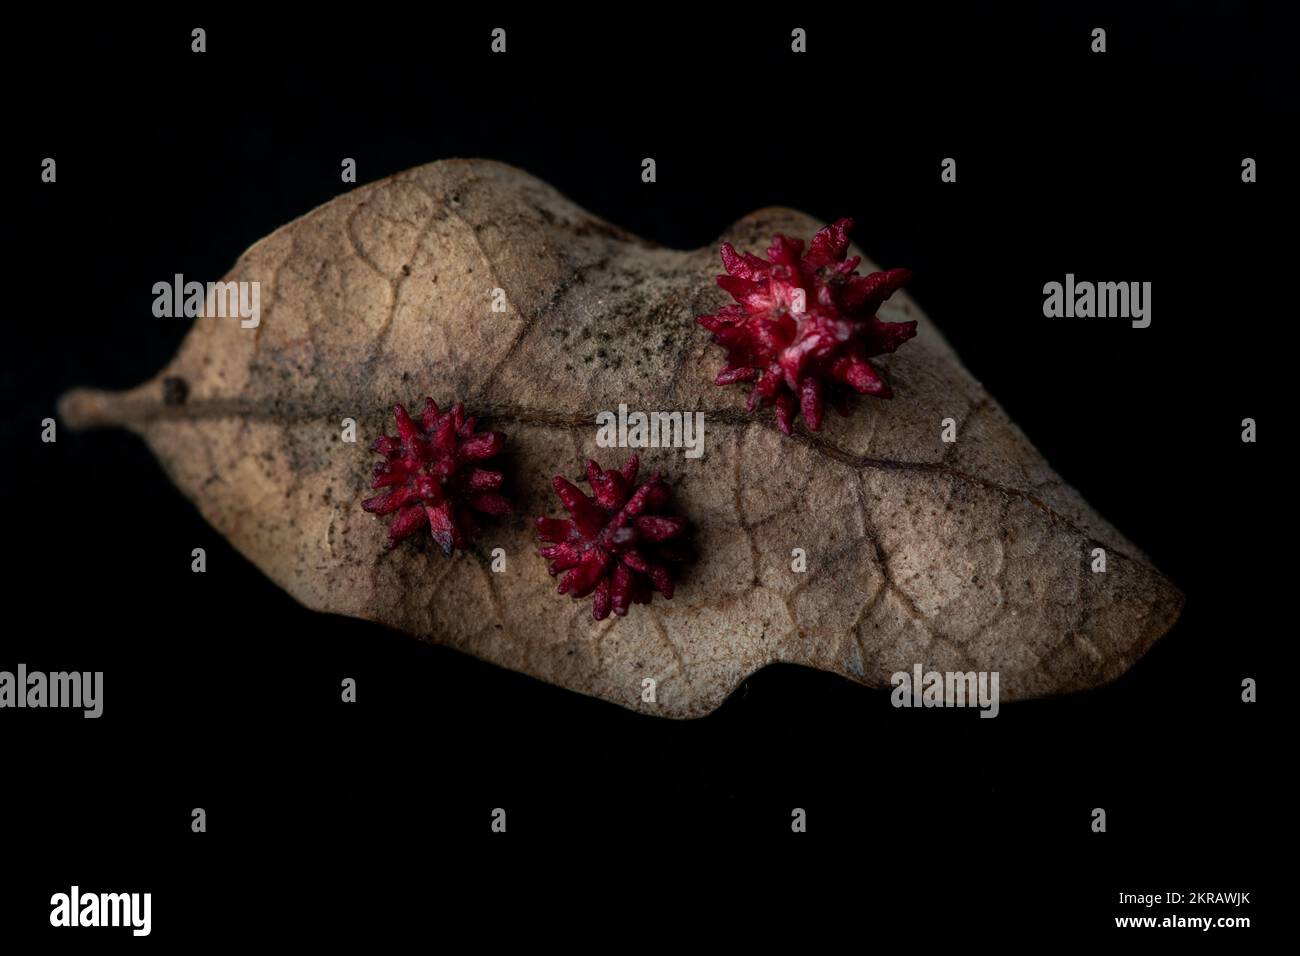 Die Seeigel-Gallenwespe (Cynips quercusechinus) erzeugt diese ungewöhnlichen Gallenblasen auf Eichenblättern. Makro aufgenommen in Kalifornien, USA. Stockfoto